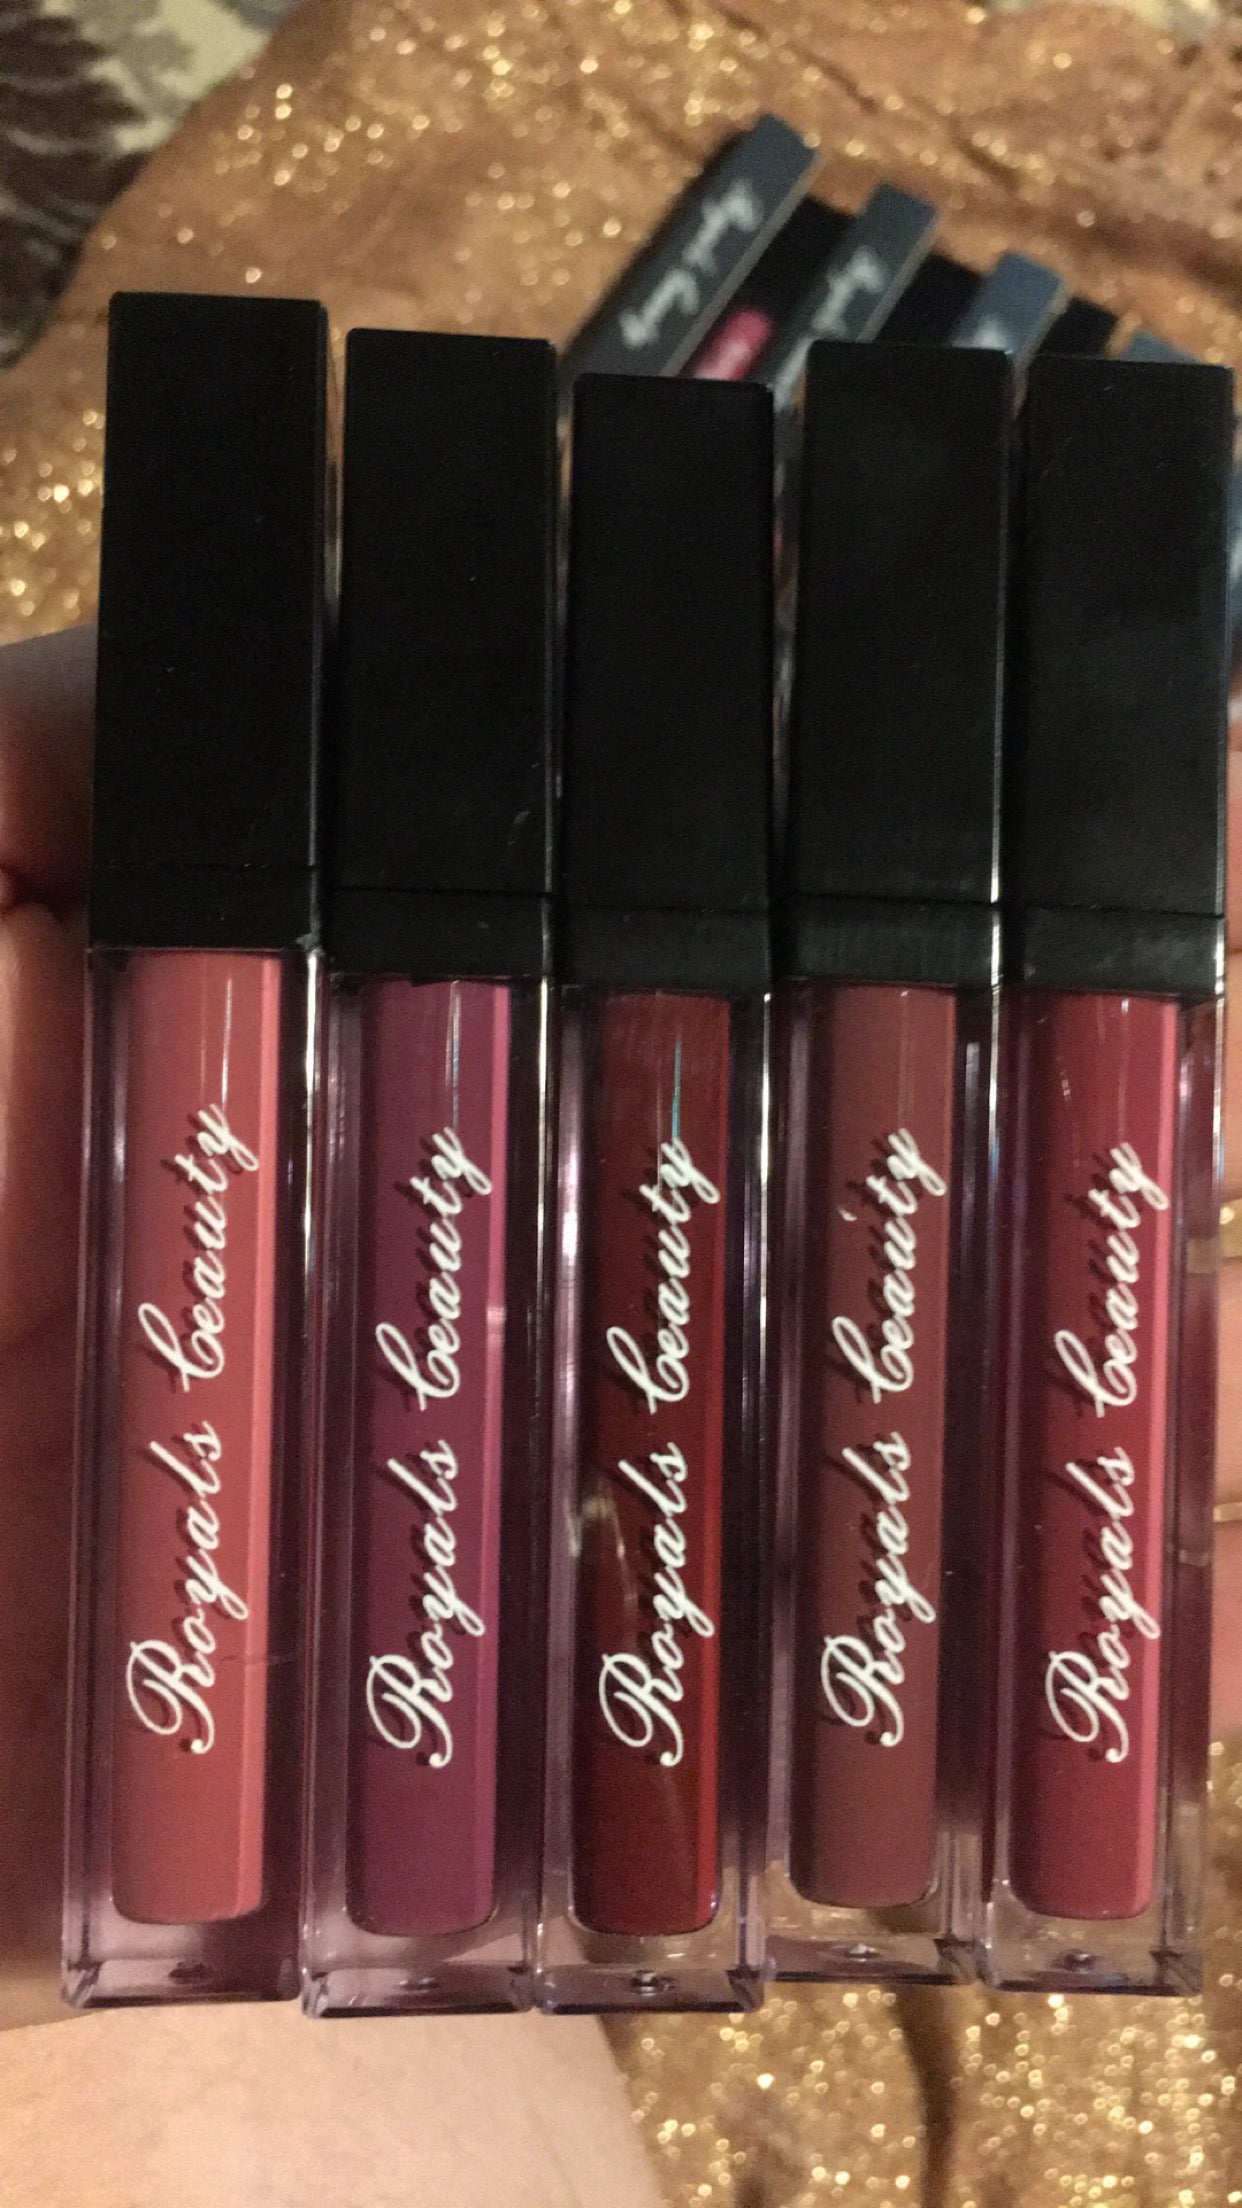 Liquid lipsticks